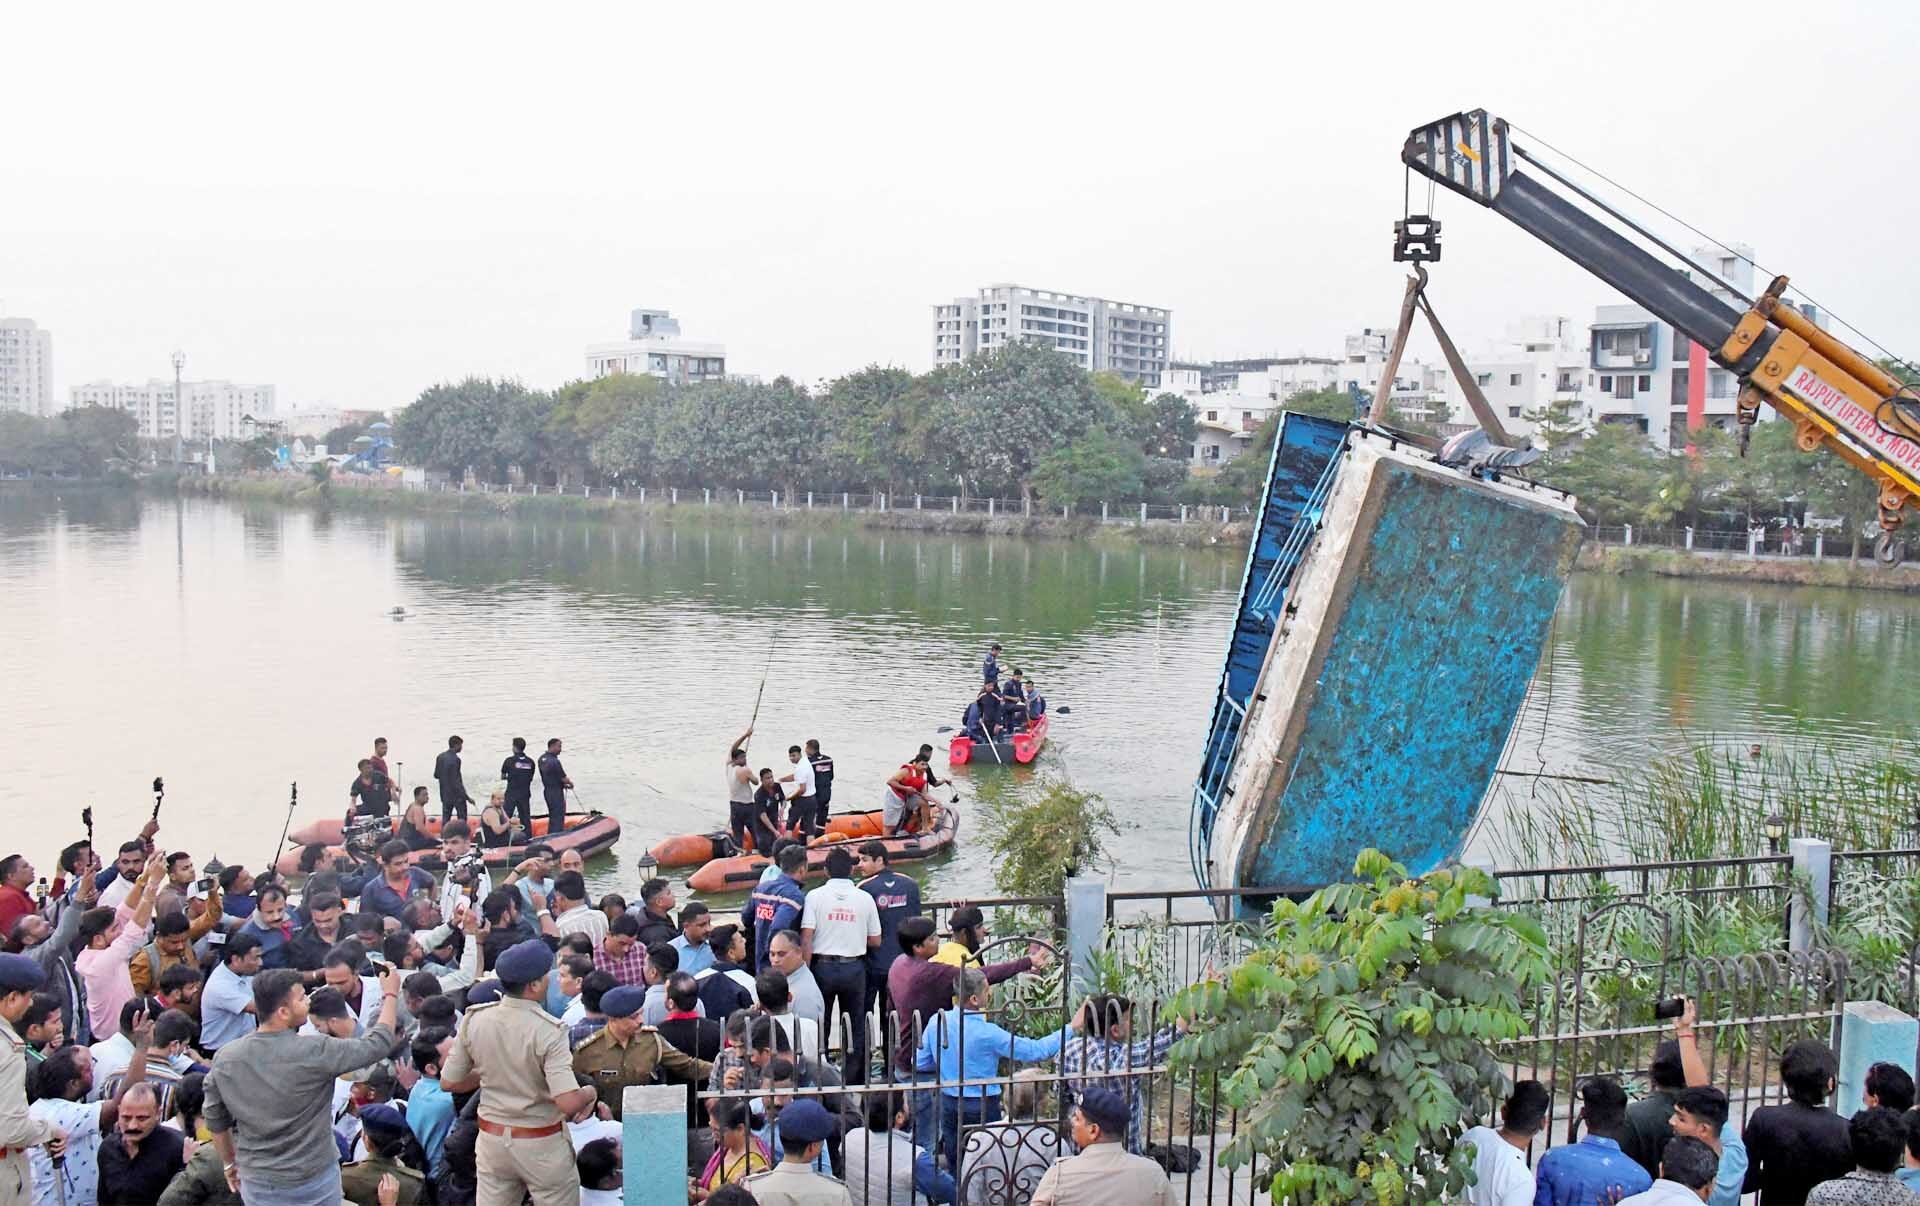 สลดเรือทัศนศึกษาล่ม! ครู-นักเรียนสังเวยทะเลสาบอินเดีย 14 ศพ ตร.เร่งหาสาเหตุ